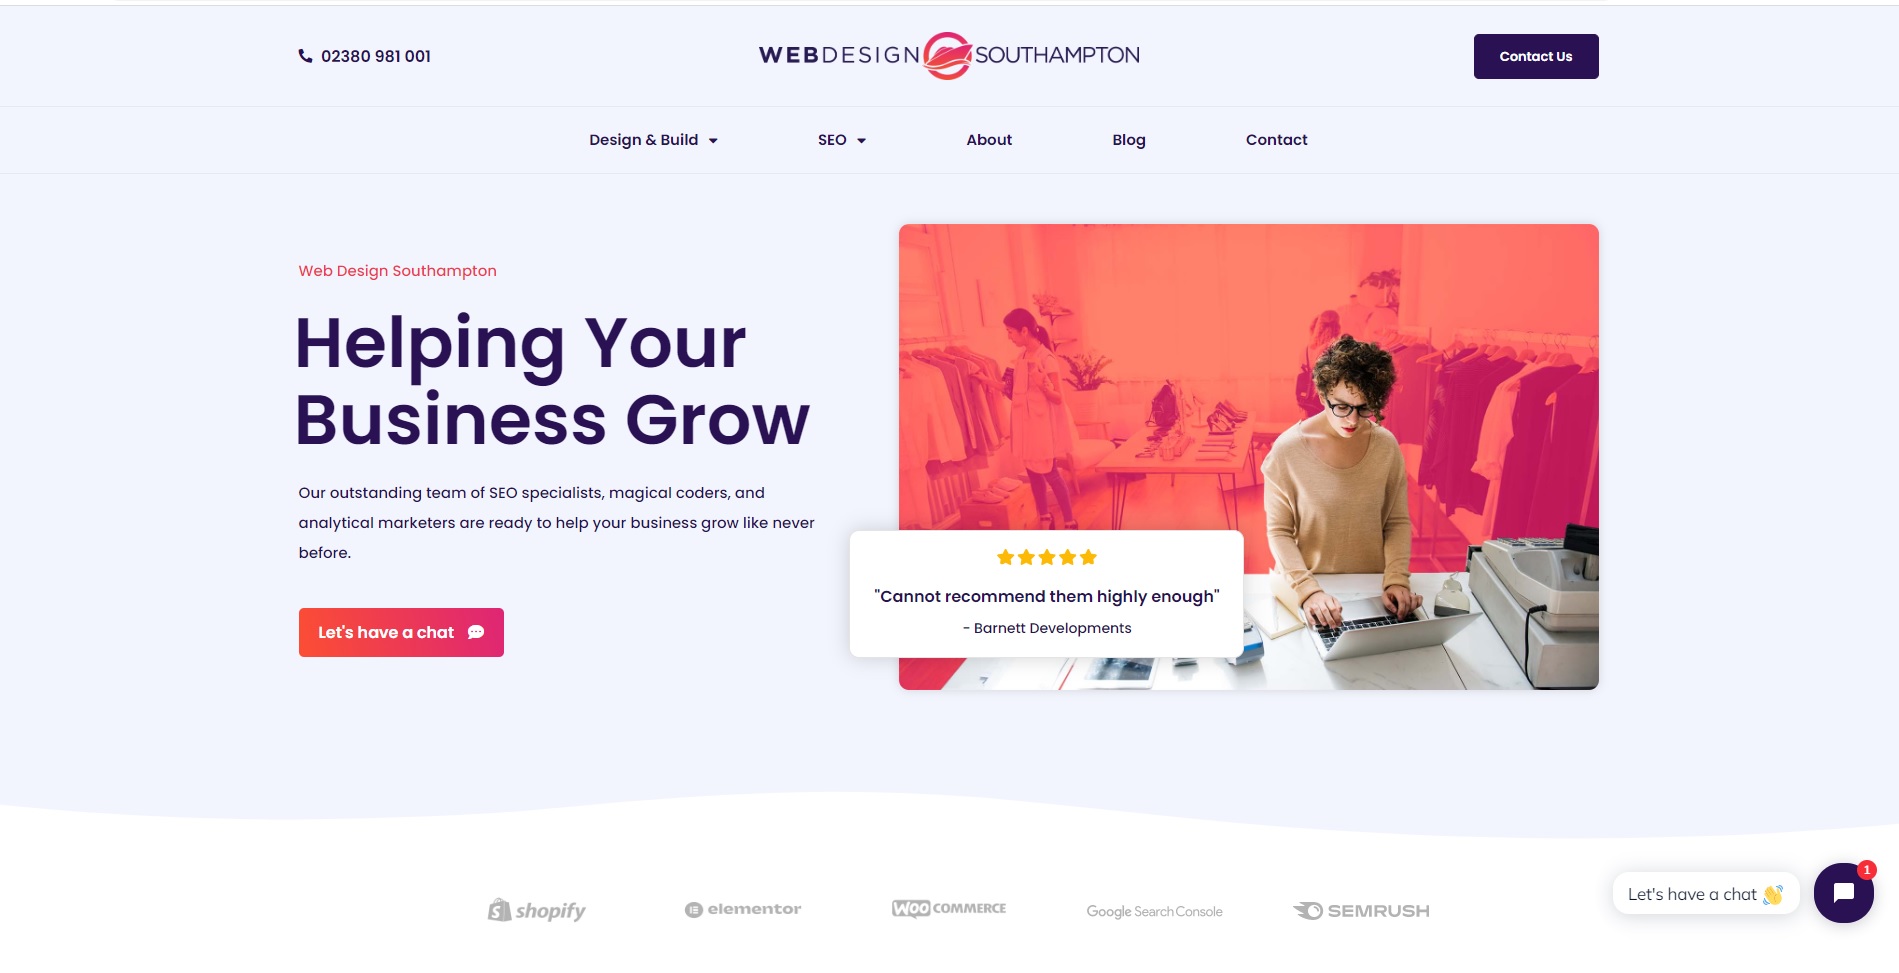 Web Design Southampton